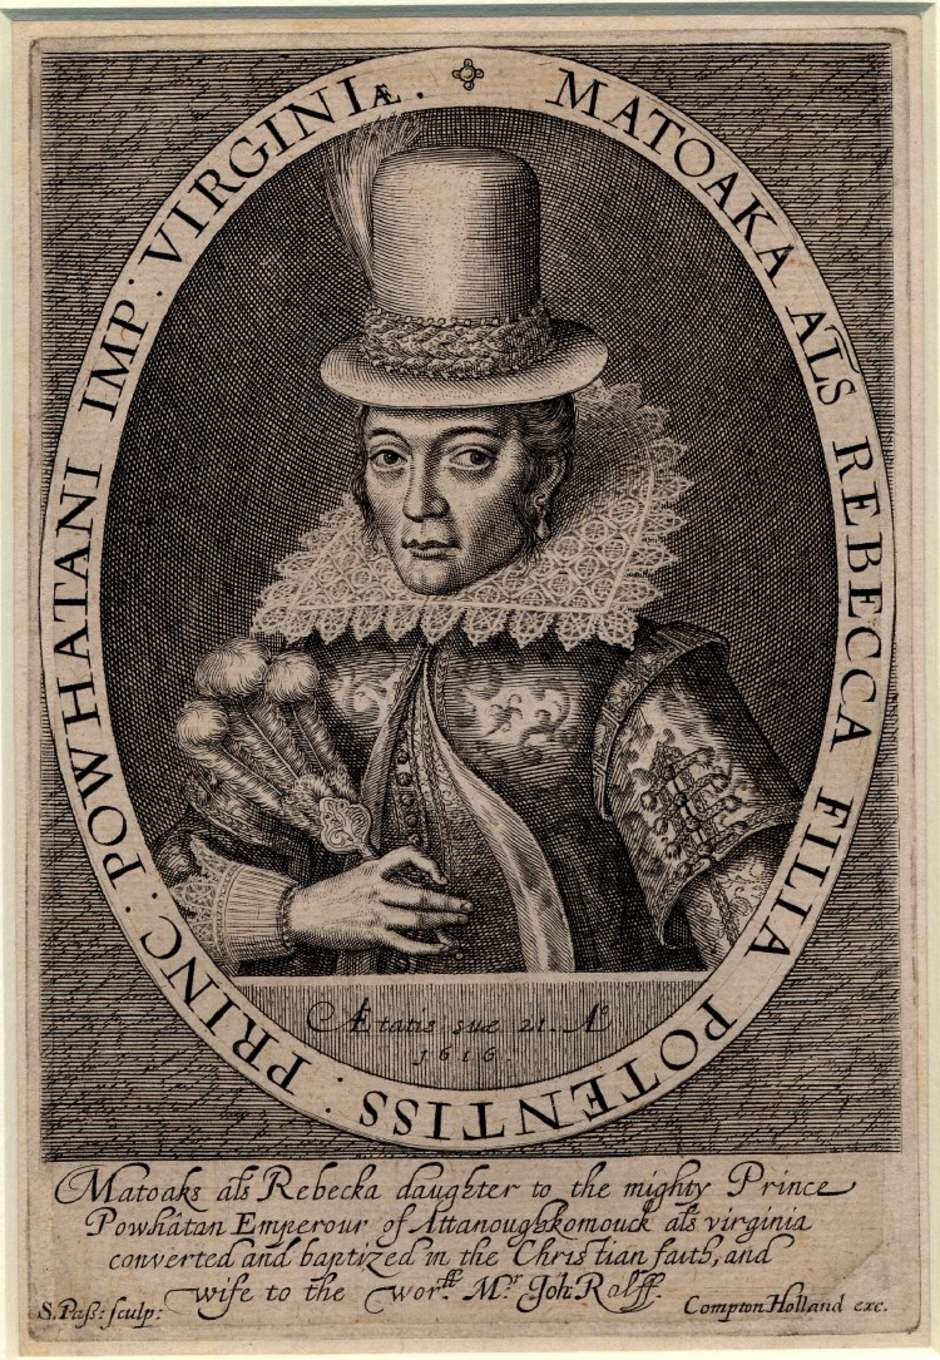 Pocahontas war die Tochter des Powhatan-Oberhauptes Wahunsonacock. Die Powhatan waren ein Zusammenschluss von rund 30 indigenen Völkern, deren Heimat den europäischen Siedlern als US-Bundesstaat Virginia bekannt war. 

Pocahontas tatsächlicher Name war Matoaka. Pocahontas war lediglich ihr Spitzname, der wahrscheinlich "die Verspielte" bedeutete. 

Pocahontas wurde 1613 von den Engländern gefangen genommen. Während ihrer Gefangenschaft änderte sie ihren Namen in Rebecca, konvertierte zum Christentum und heiratete den Engländer John Rolfe, mit dem sie ihren Sohn Thomas hatte. John Rolf, Pocahontas und ihr Sohn segelten 1616 nach England, wo Pocahontas König James I und Mitgliedern der adligen Gesellschaft als "zivilisierte Wilde" vorgestellt wurde. 

Als die Familie 1617 die Rückreise in die USA antreten wollte, erkrankte Pocahontas schwer und starb im Alter von 22 Jahren in Gravesend, Großbritannien. Ein Eintrag im Register der Kirchengemeinde von Gravesend, in der sie bestattet wurde, erinnert an sie:

"Rebecca Wroth, Ehefrau des Edelmannes Thomas Wroth, eine Dame geboren in Virginia, wurde im Altarraum beigesetzt."

Ihr Sohn Thomas blieb zunächst in England und kehrte erst als junger Mann wieder nach Virginia zurück. Viele Menschen erheben heute Anspruch darauf, über Thomas Nachfahren von Pocahontas zu sein.